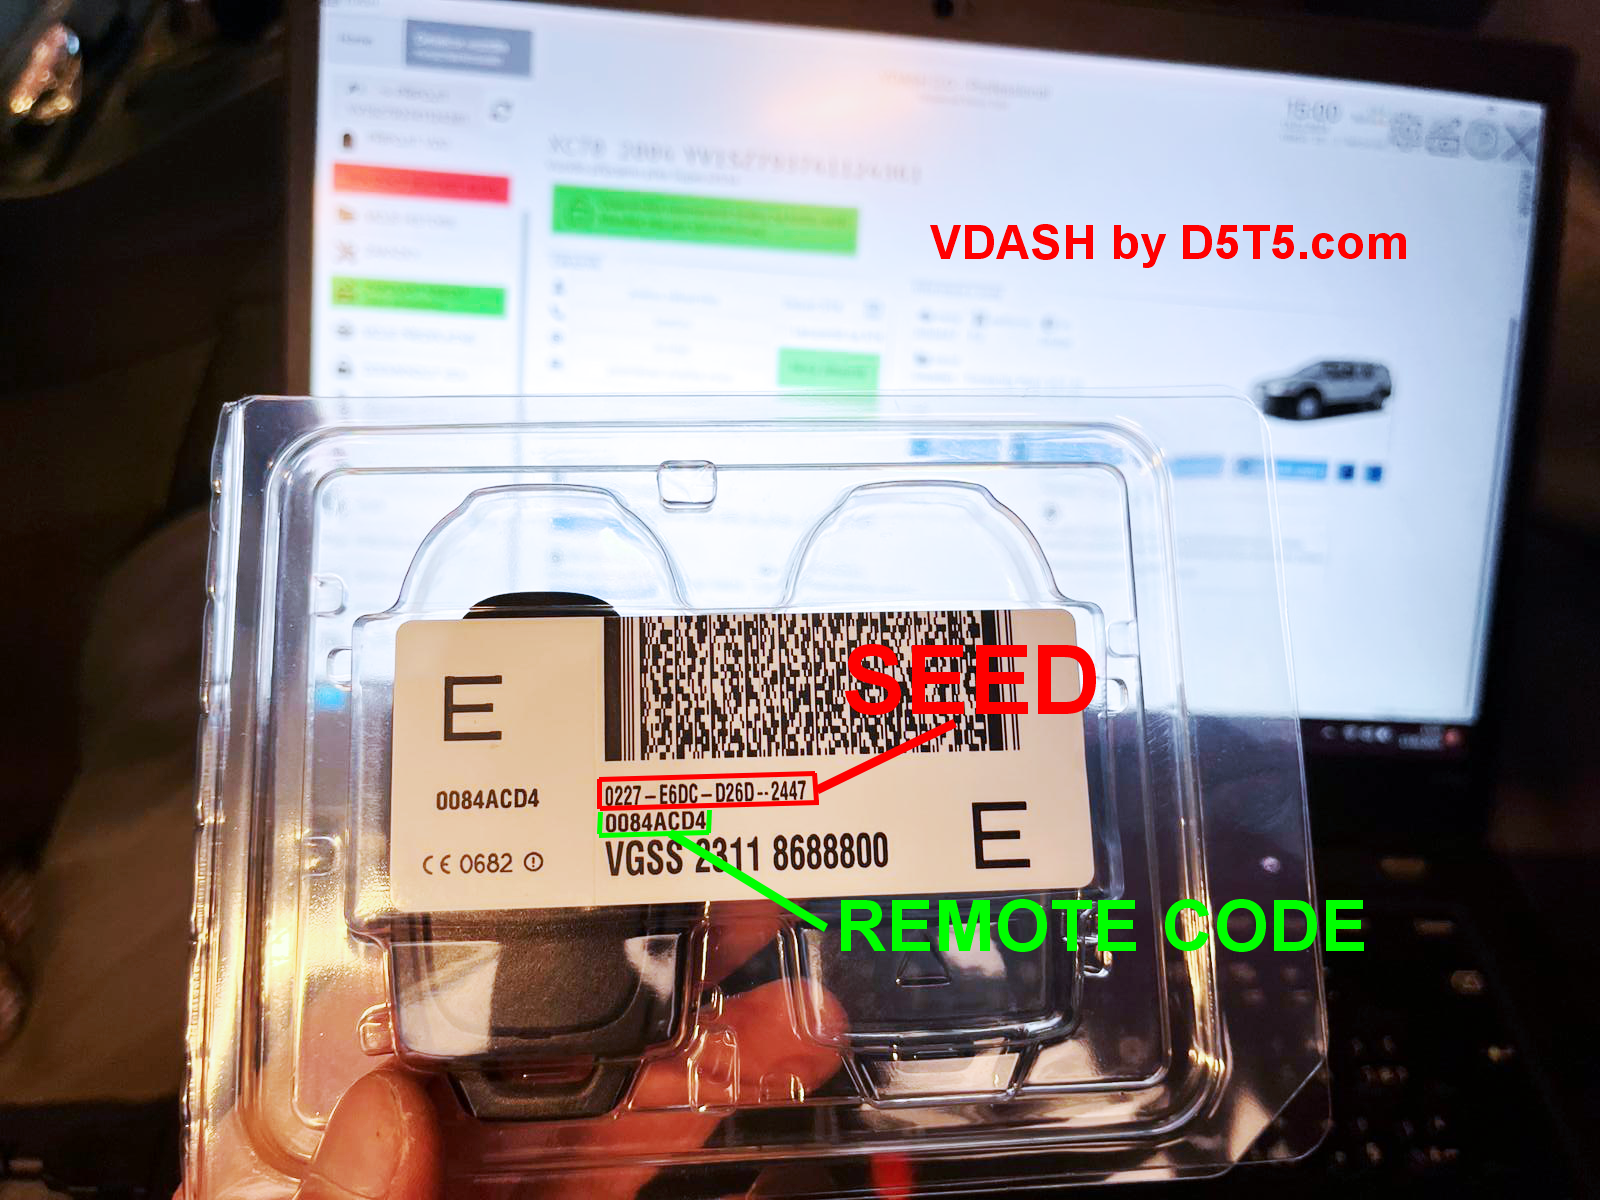 Volvo P2 remote codes